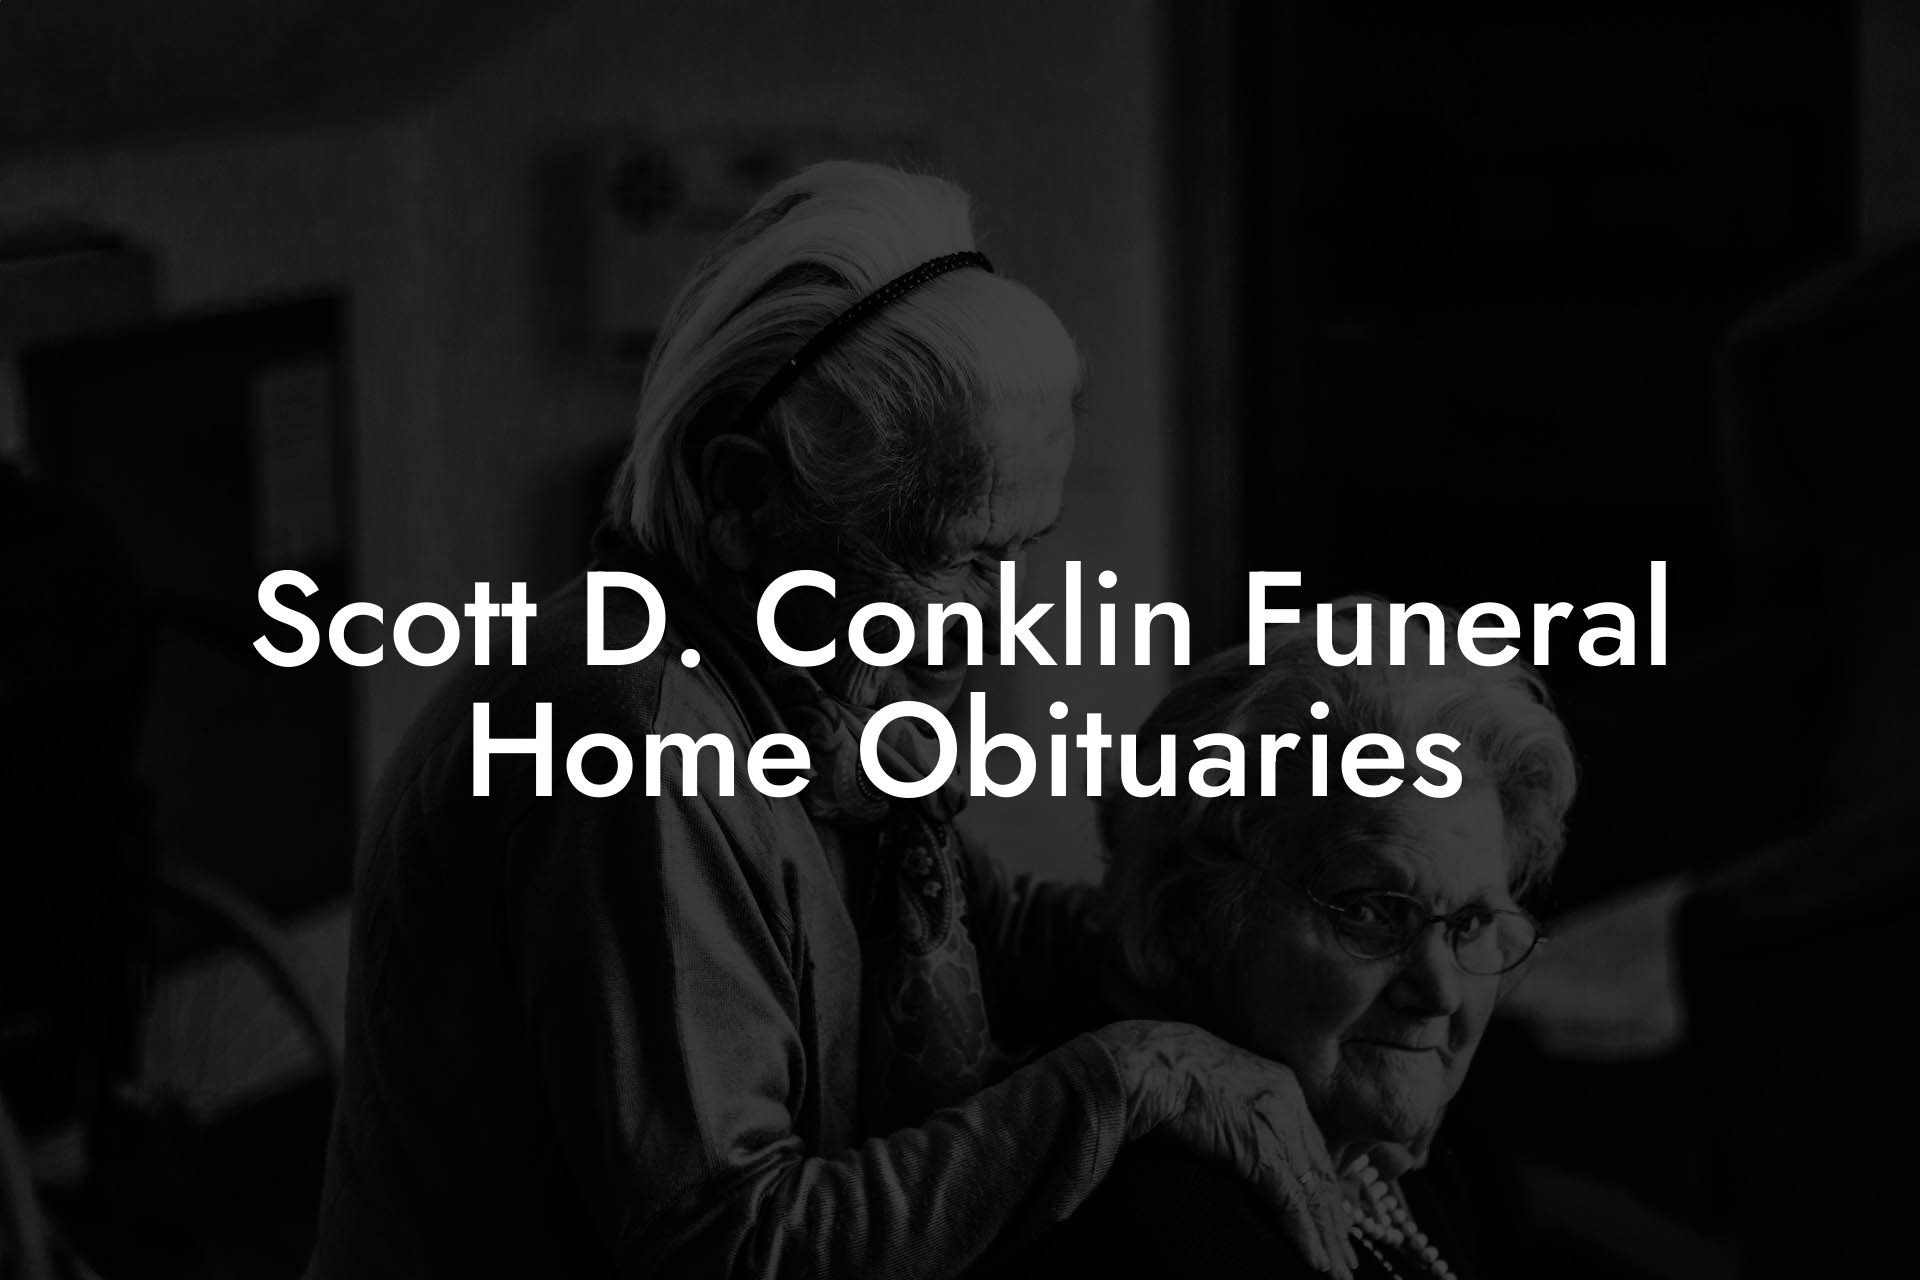 Scott D. Conklin Funeral Home Obituaries